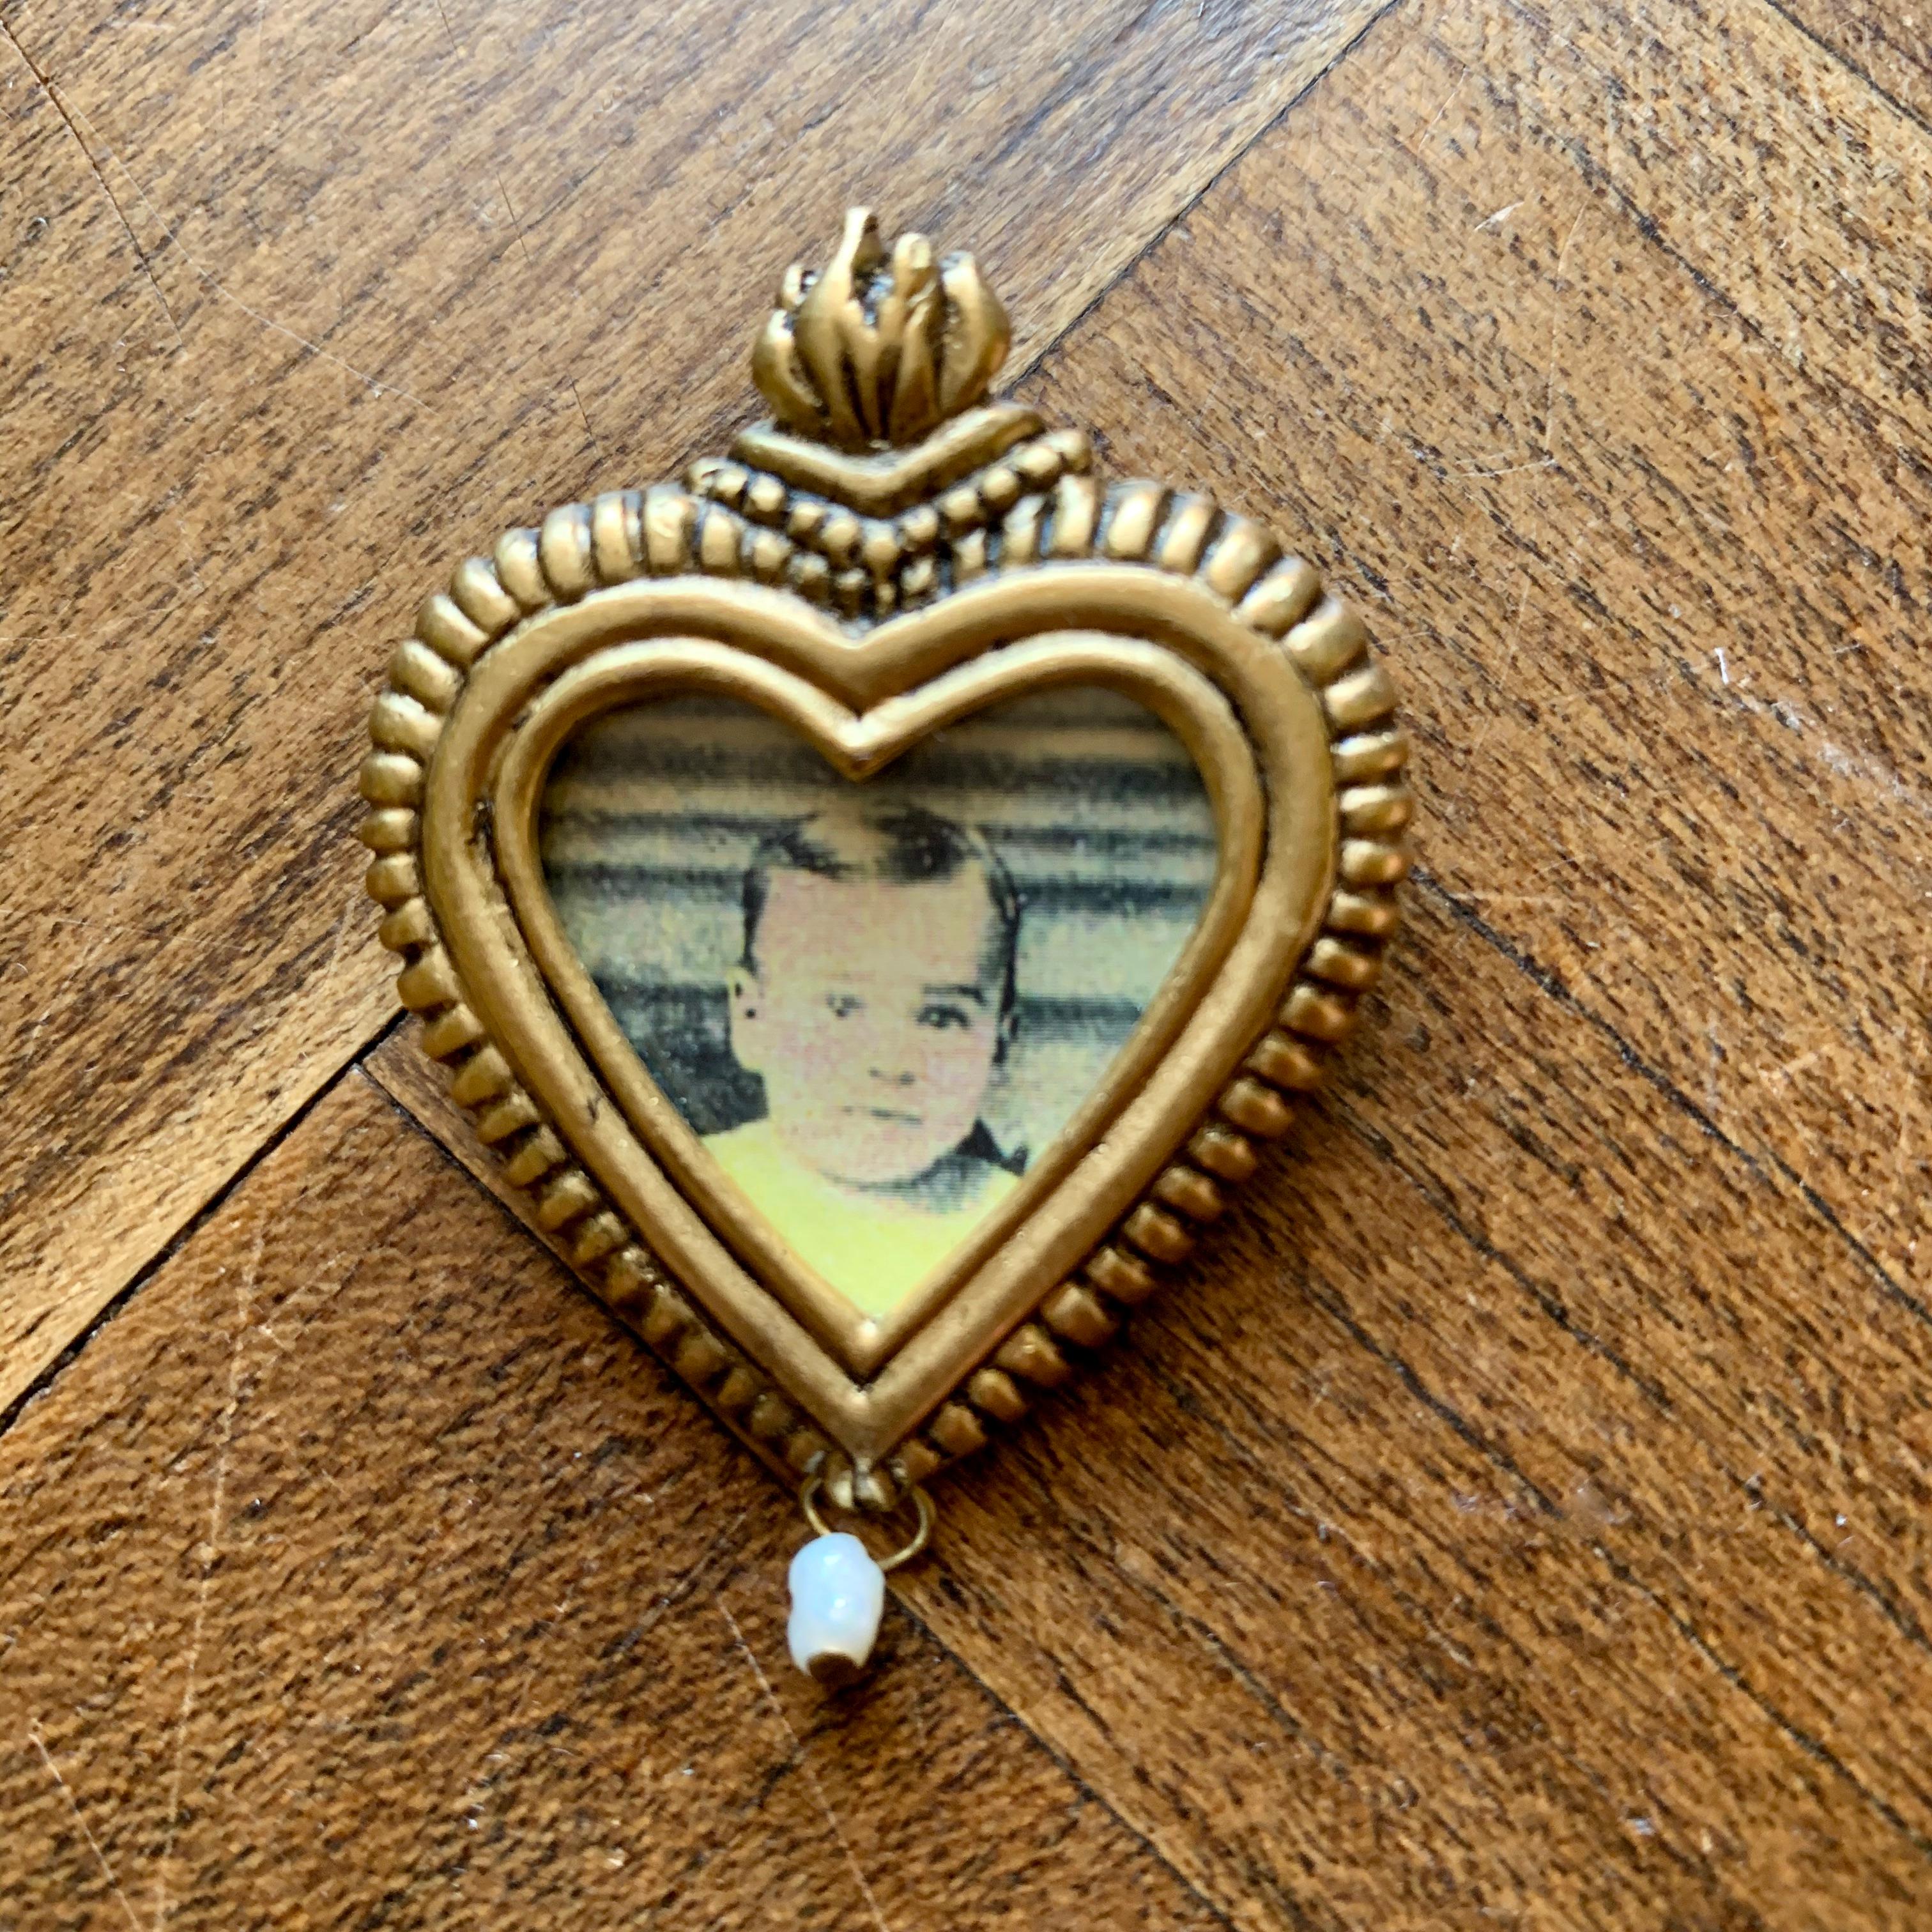 Issue de la collection de bijoux Maximal Art des années 1980 de John Wind, une épingle à portrait moulée comme un cœur sacré.

Le porte-photo en métal moulé en forme de cœur a une flamme moulée en haut et une perle de graine pendante en bas. Le